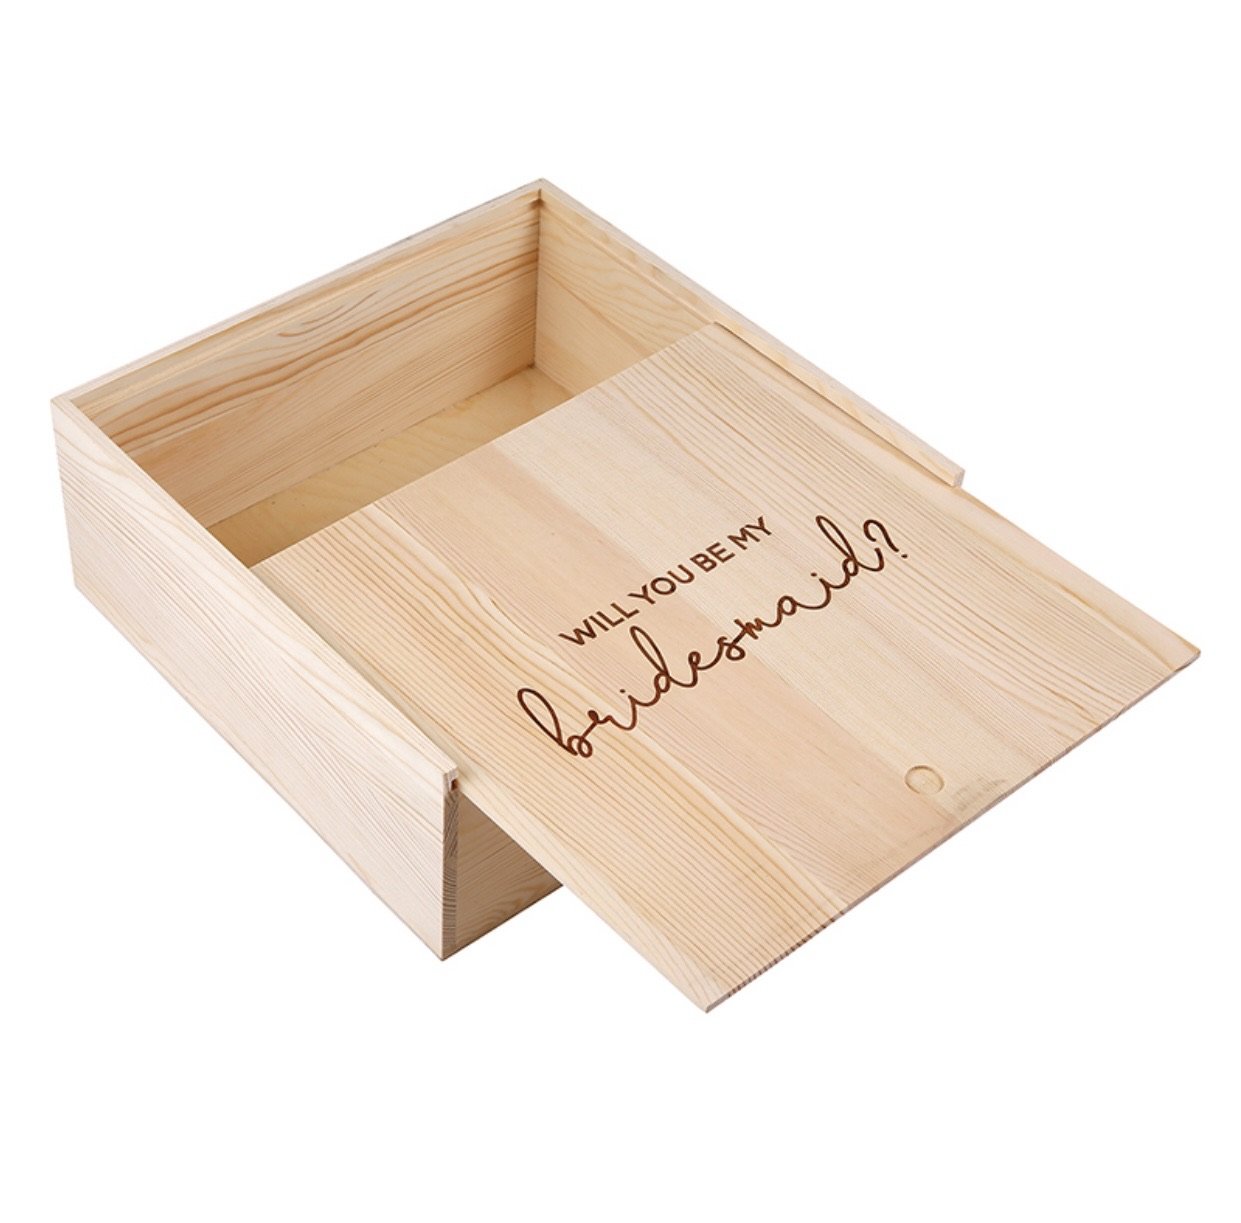 Bridesmaid Proposal Wooden Box